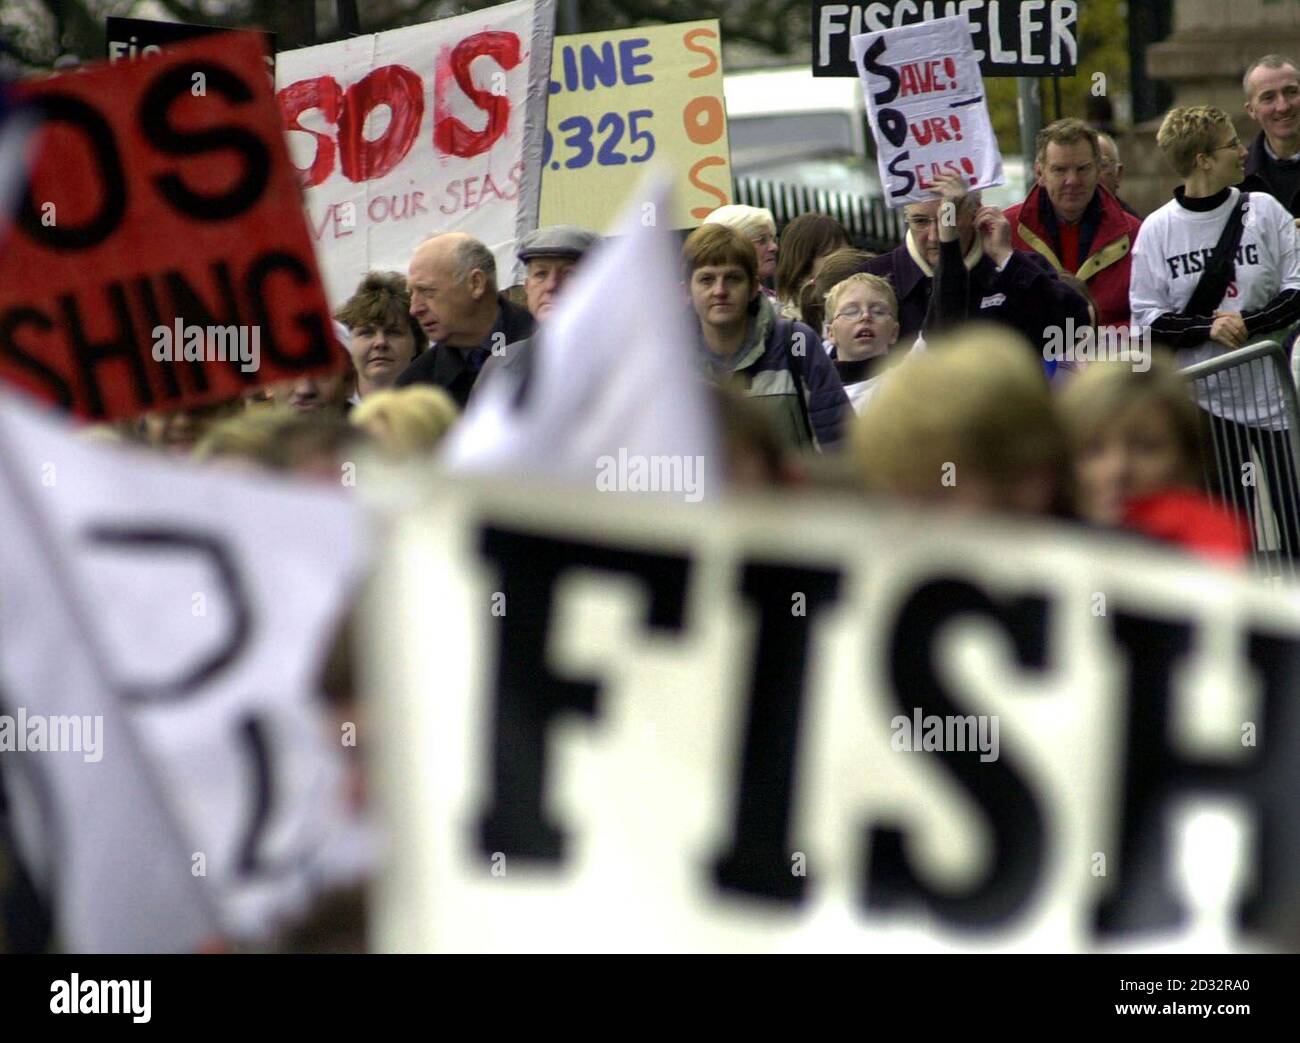 Les pêcheurs se réunissent au Parlement écossais d'Édimbourg pour protester contre les réductions dans l'industrie de la pêche.06/12/02 : les pêcheurs se réunissent au Parlement écossais d'Édimbourg pour protester contre les réductions dans l'industrie de la pêche.Les pêcheurs et leurs partisans ont présenté une pétition de 40,000 noms au Parlement écossais sur le sort de l'industrie.Les militants revendiquent une opposition universelle aux réductions massives envisagées par la Commission européenne.Selon eux, une réduction des quotas d'environ 80% entraînerait des dizaines de milliers de pertes d'emplois en Écosse. Banque D'Images